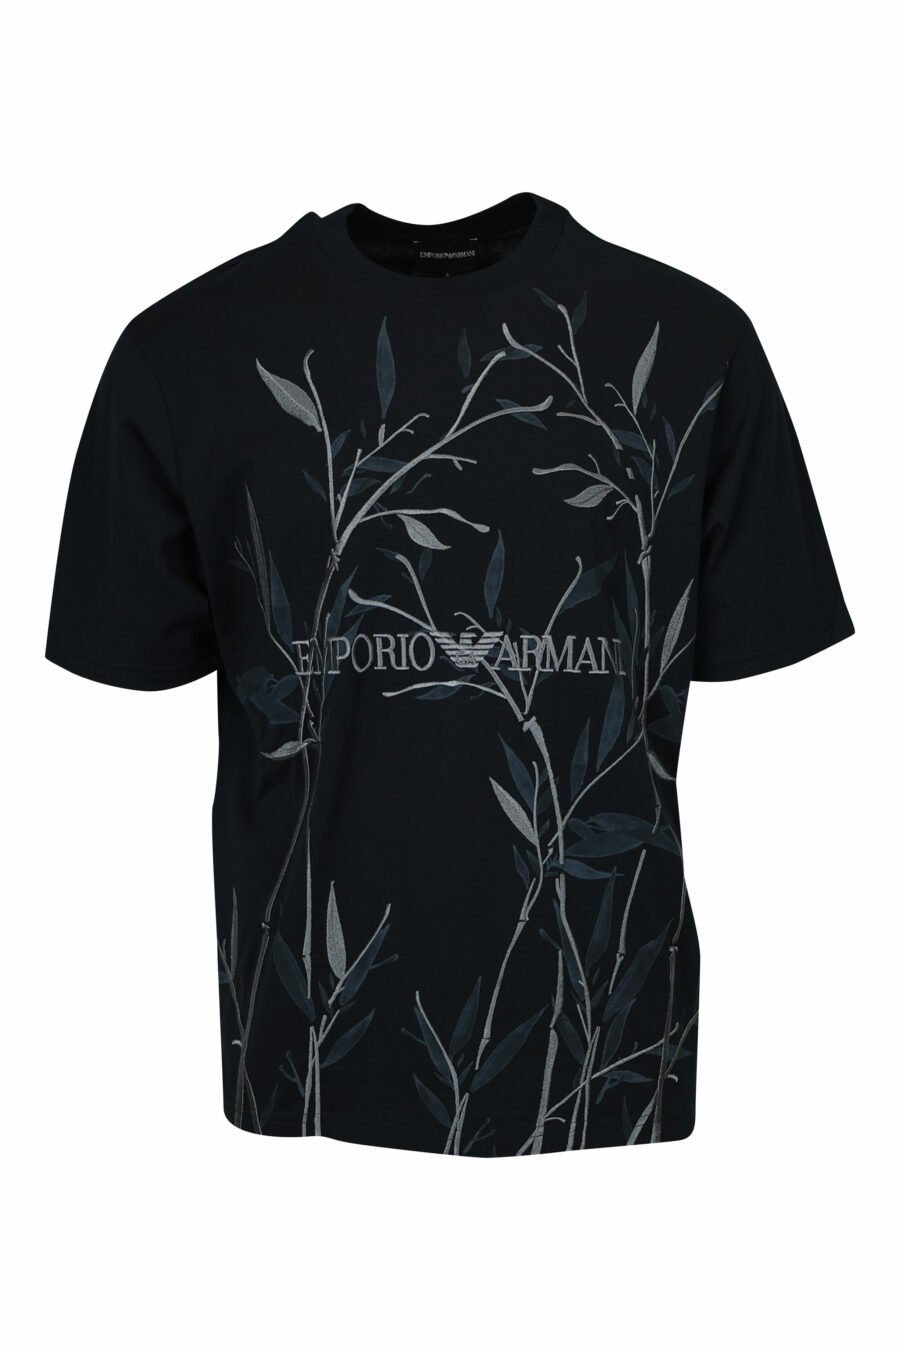 T-shirt preta com estampado de folhas e maxilogo "emporio" - 8058947296163